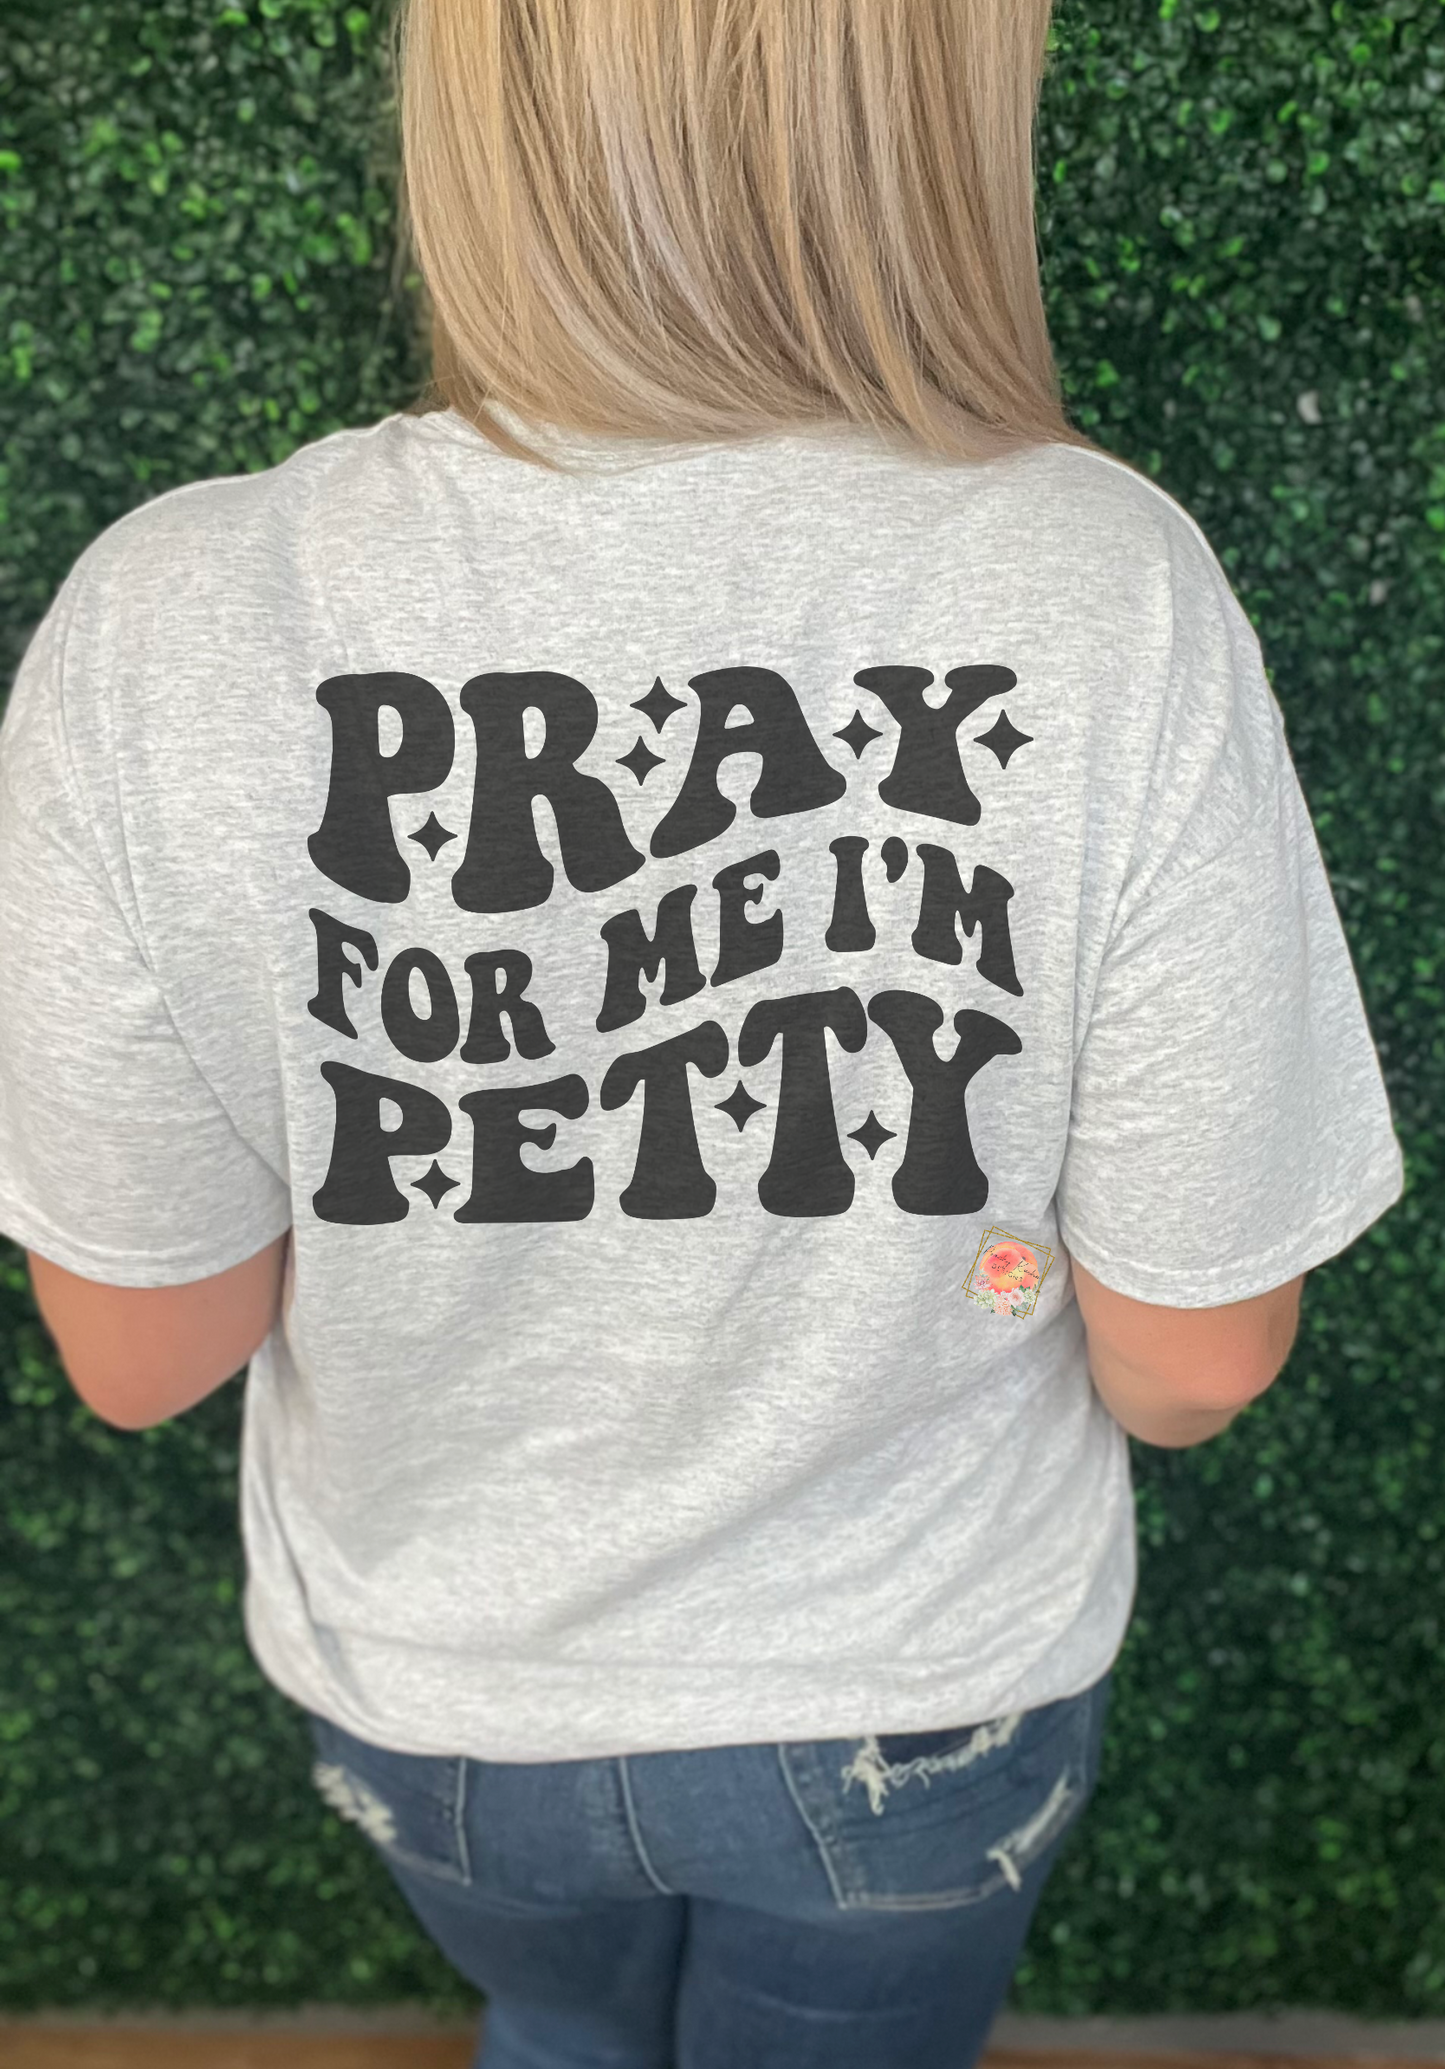 Pray for me, I’m petty tee